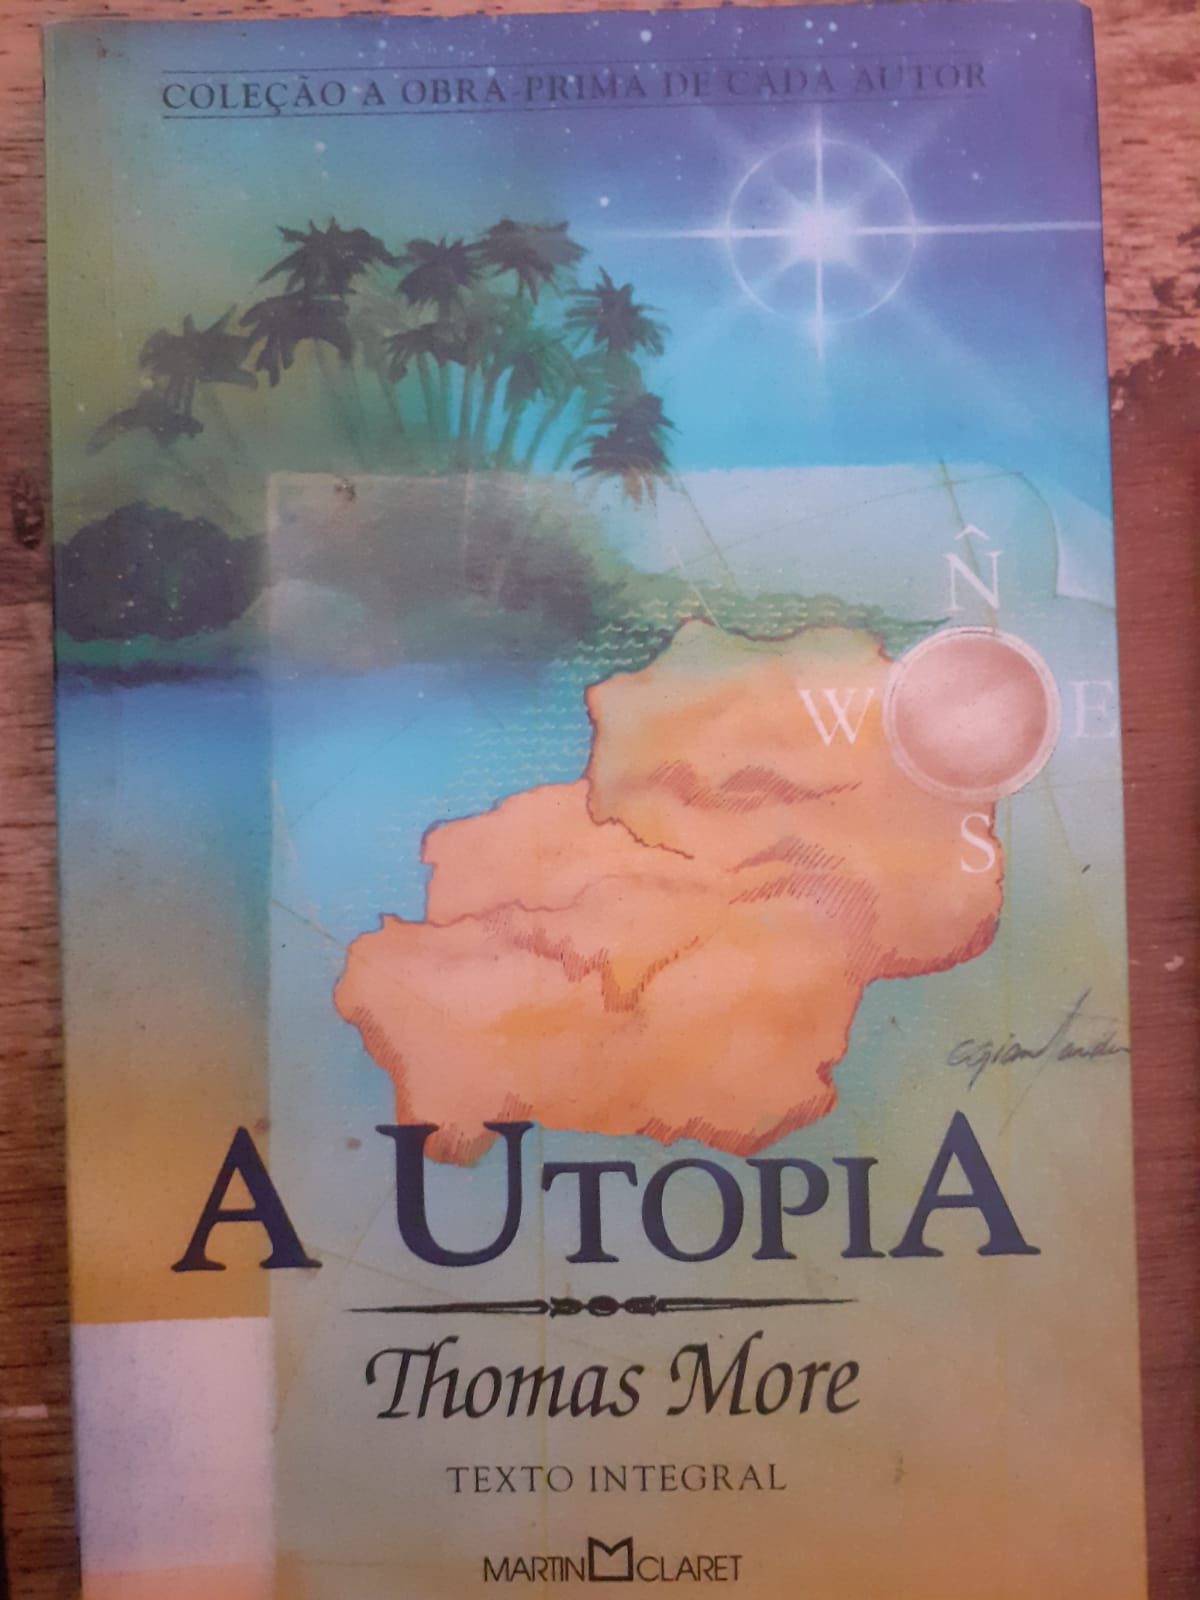 A Utopia (Thomas More)